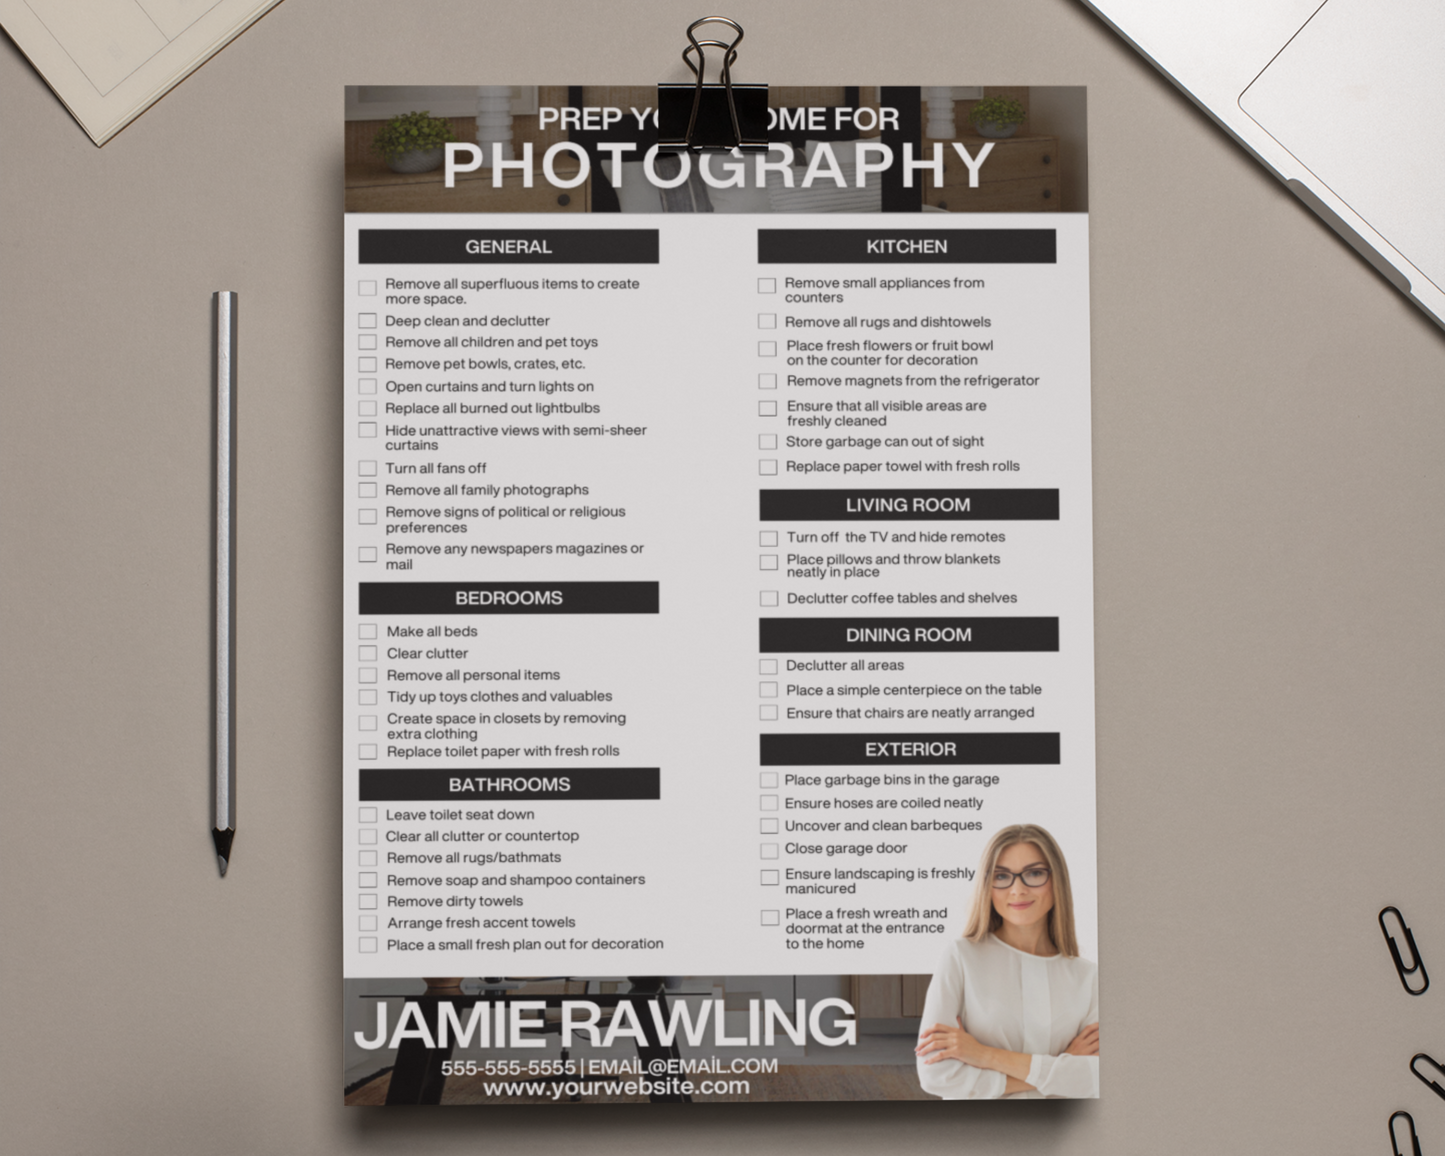 Photography Prep Checklist, Real Estate Template, Realtor Photography, Seller Checklist, Realtor Marketing, Photo Prep Guide, Realtor Flyer